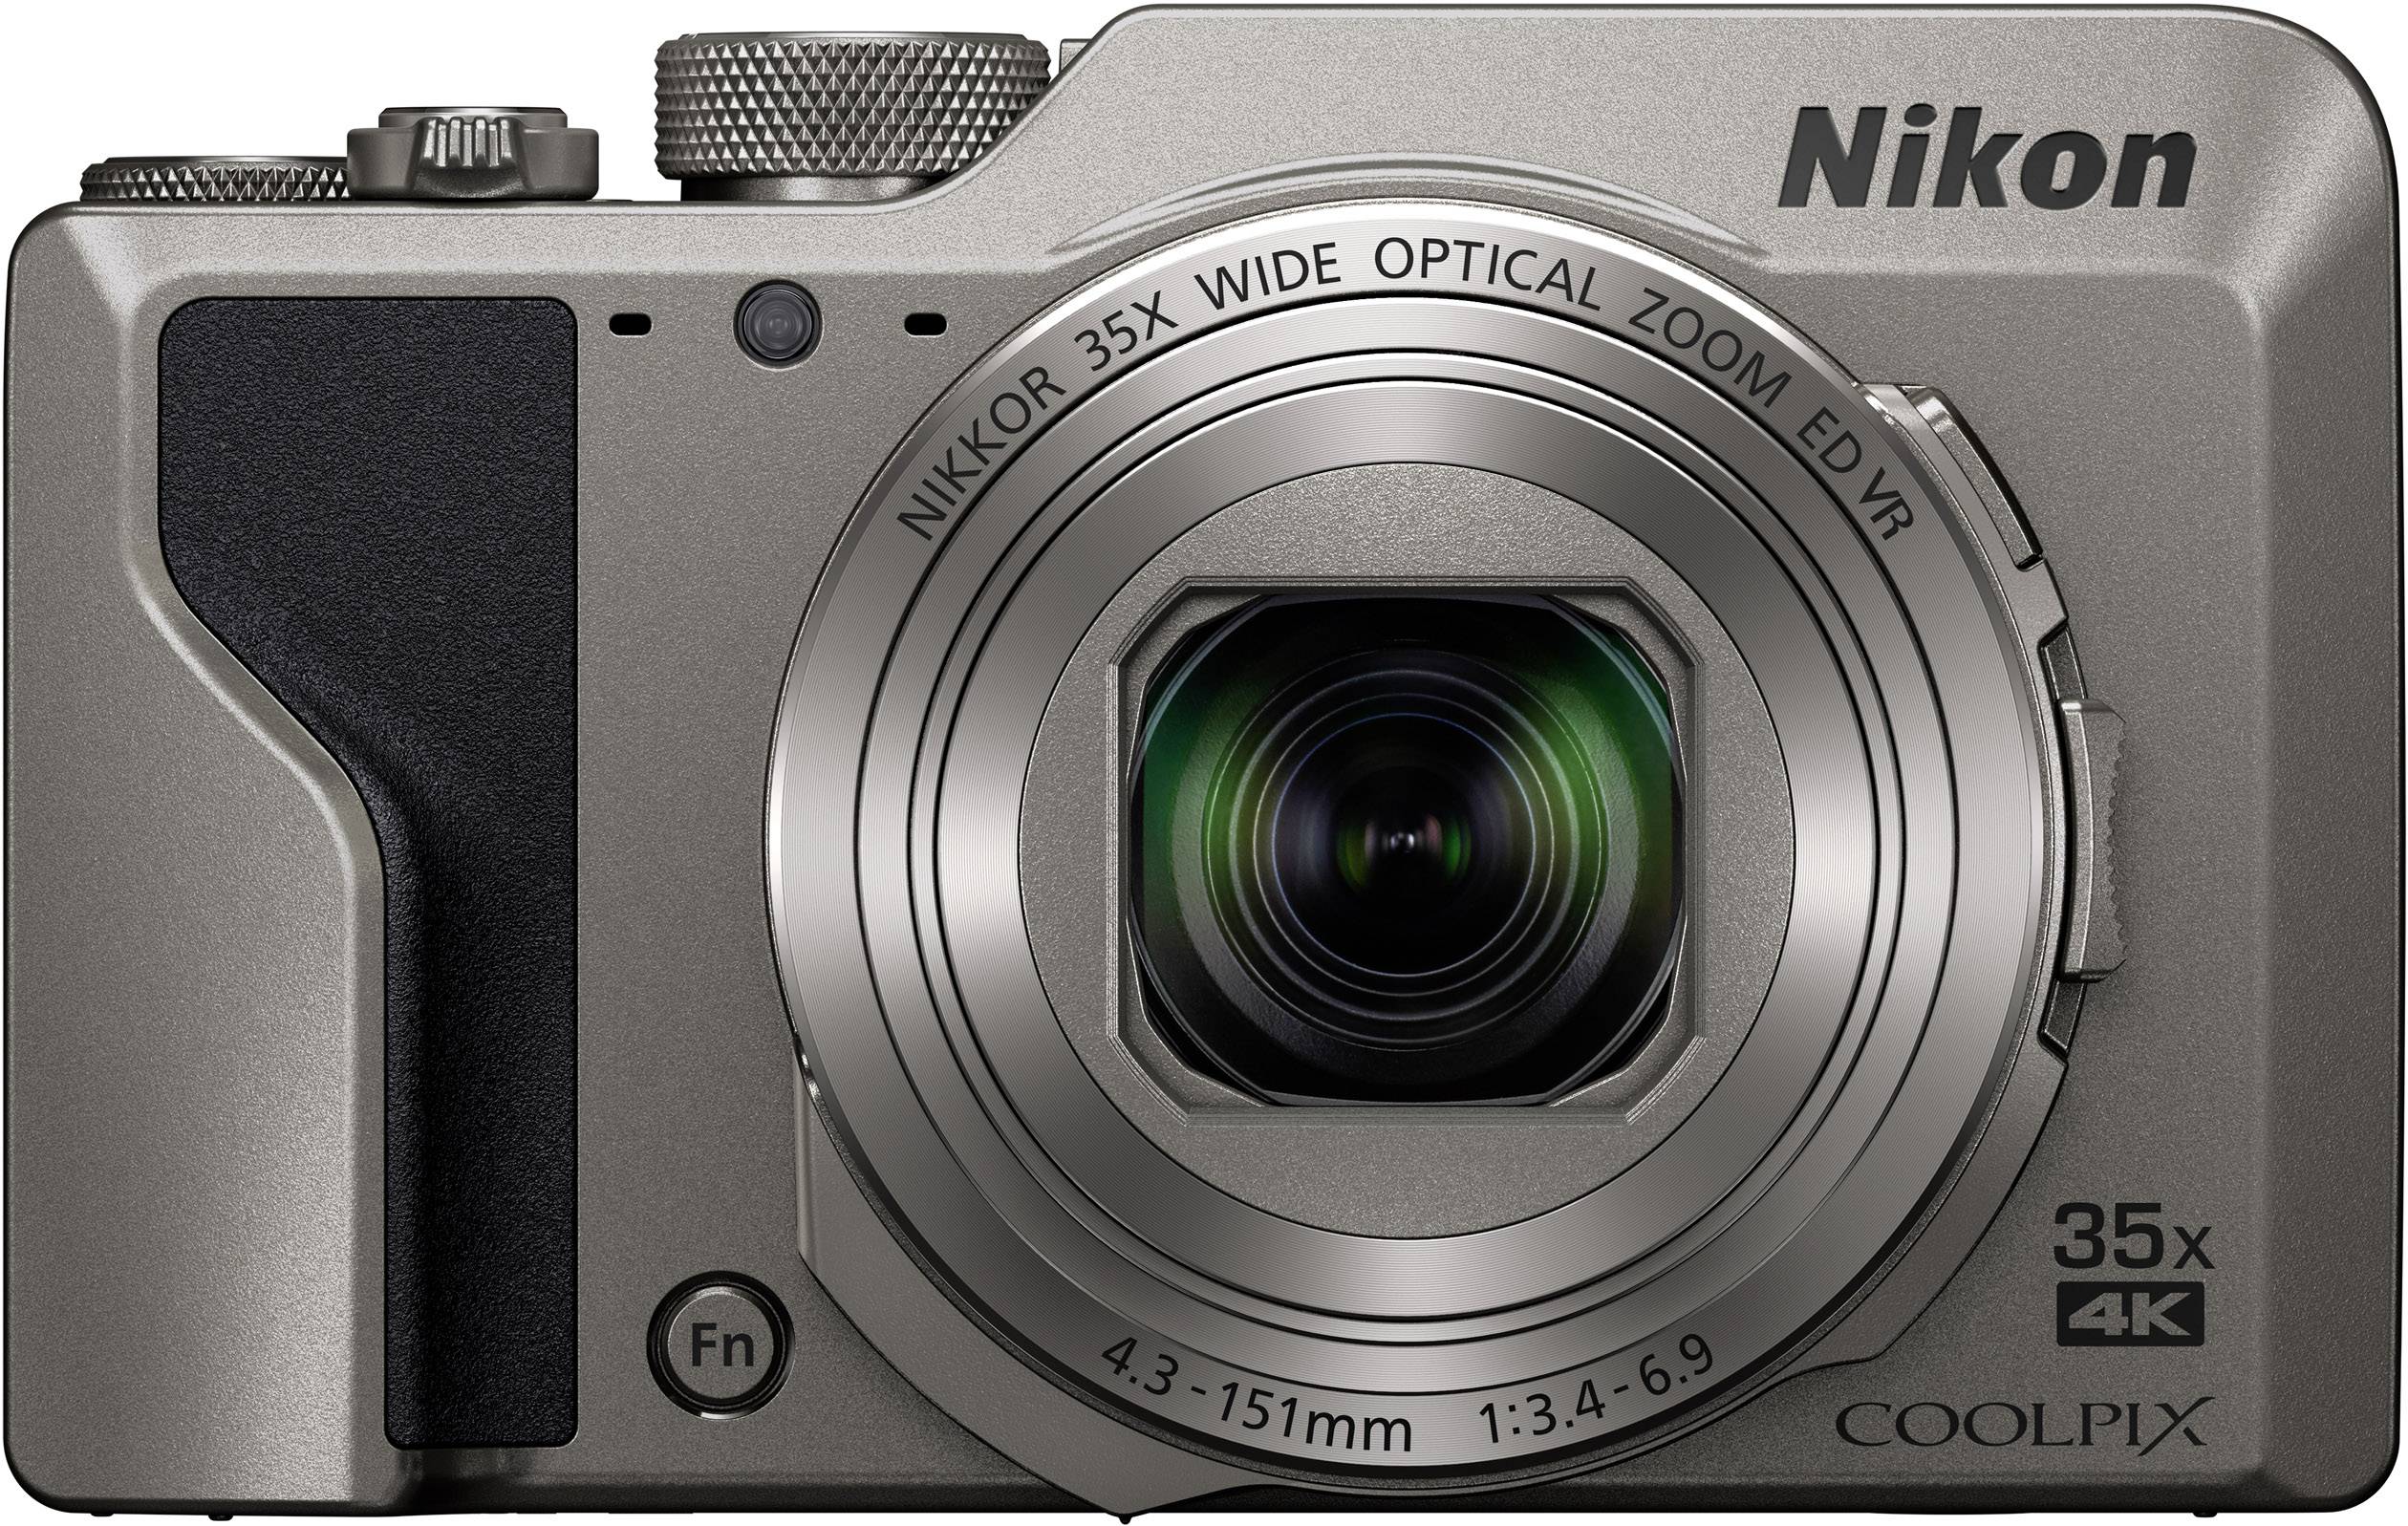 Nikon Coolpix A1000 Digital Camera Review